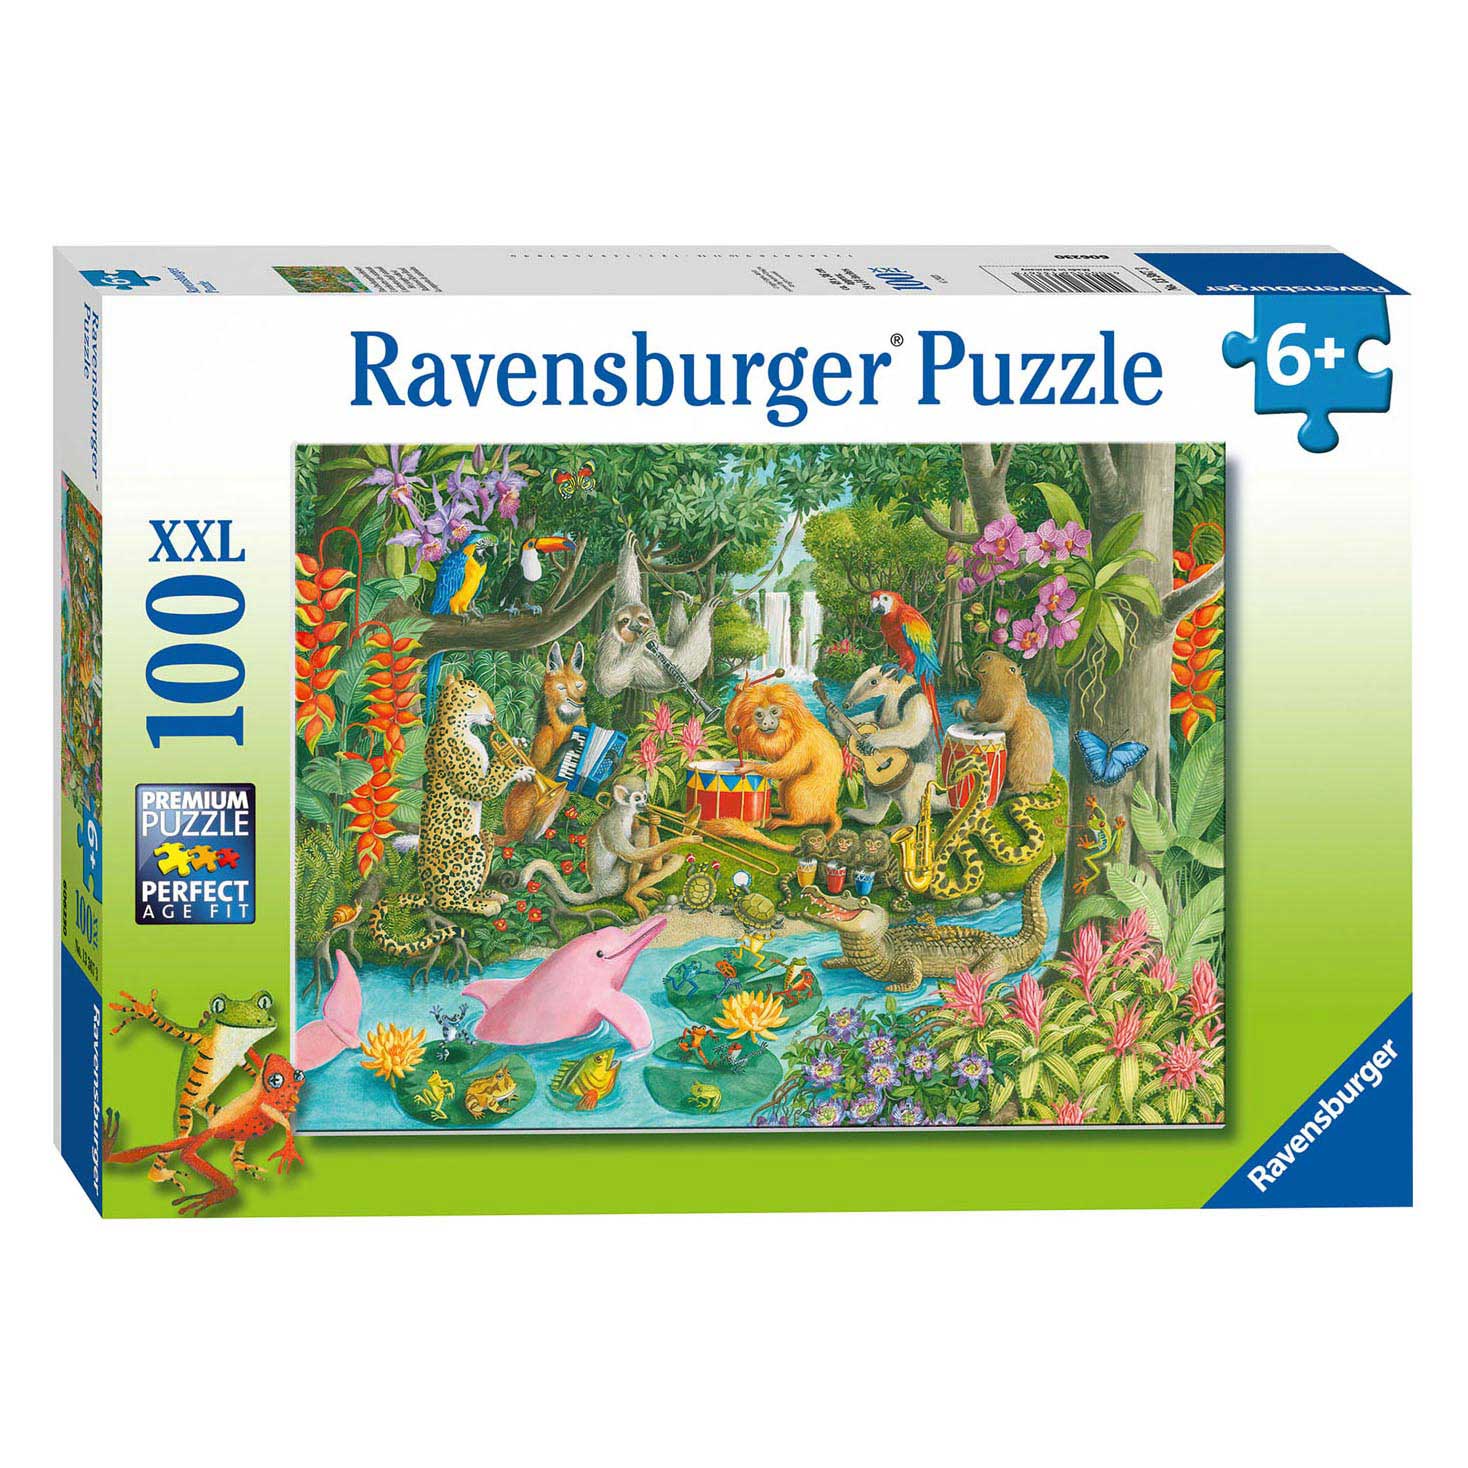 Ravensburger Puzzle L'Orchestre de la Jungle, 100 pcs. XXL